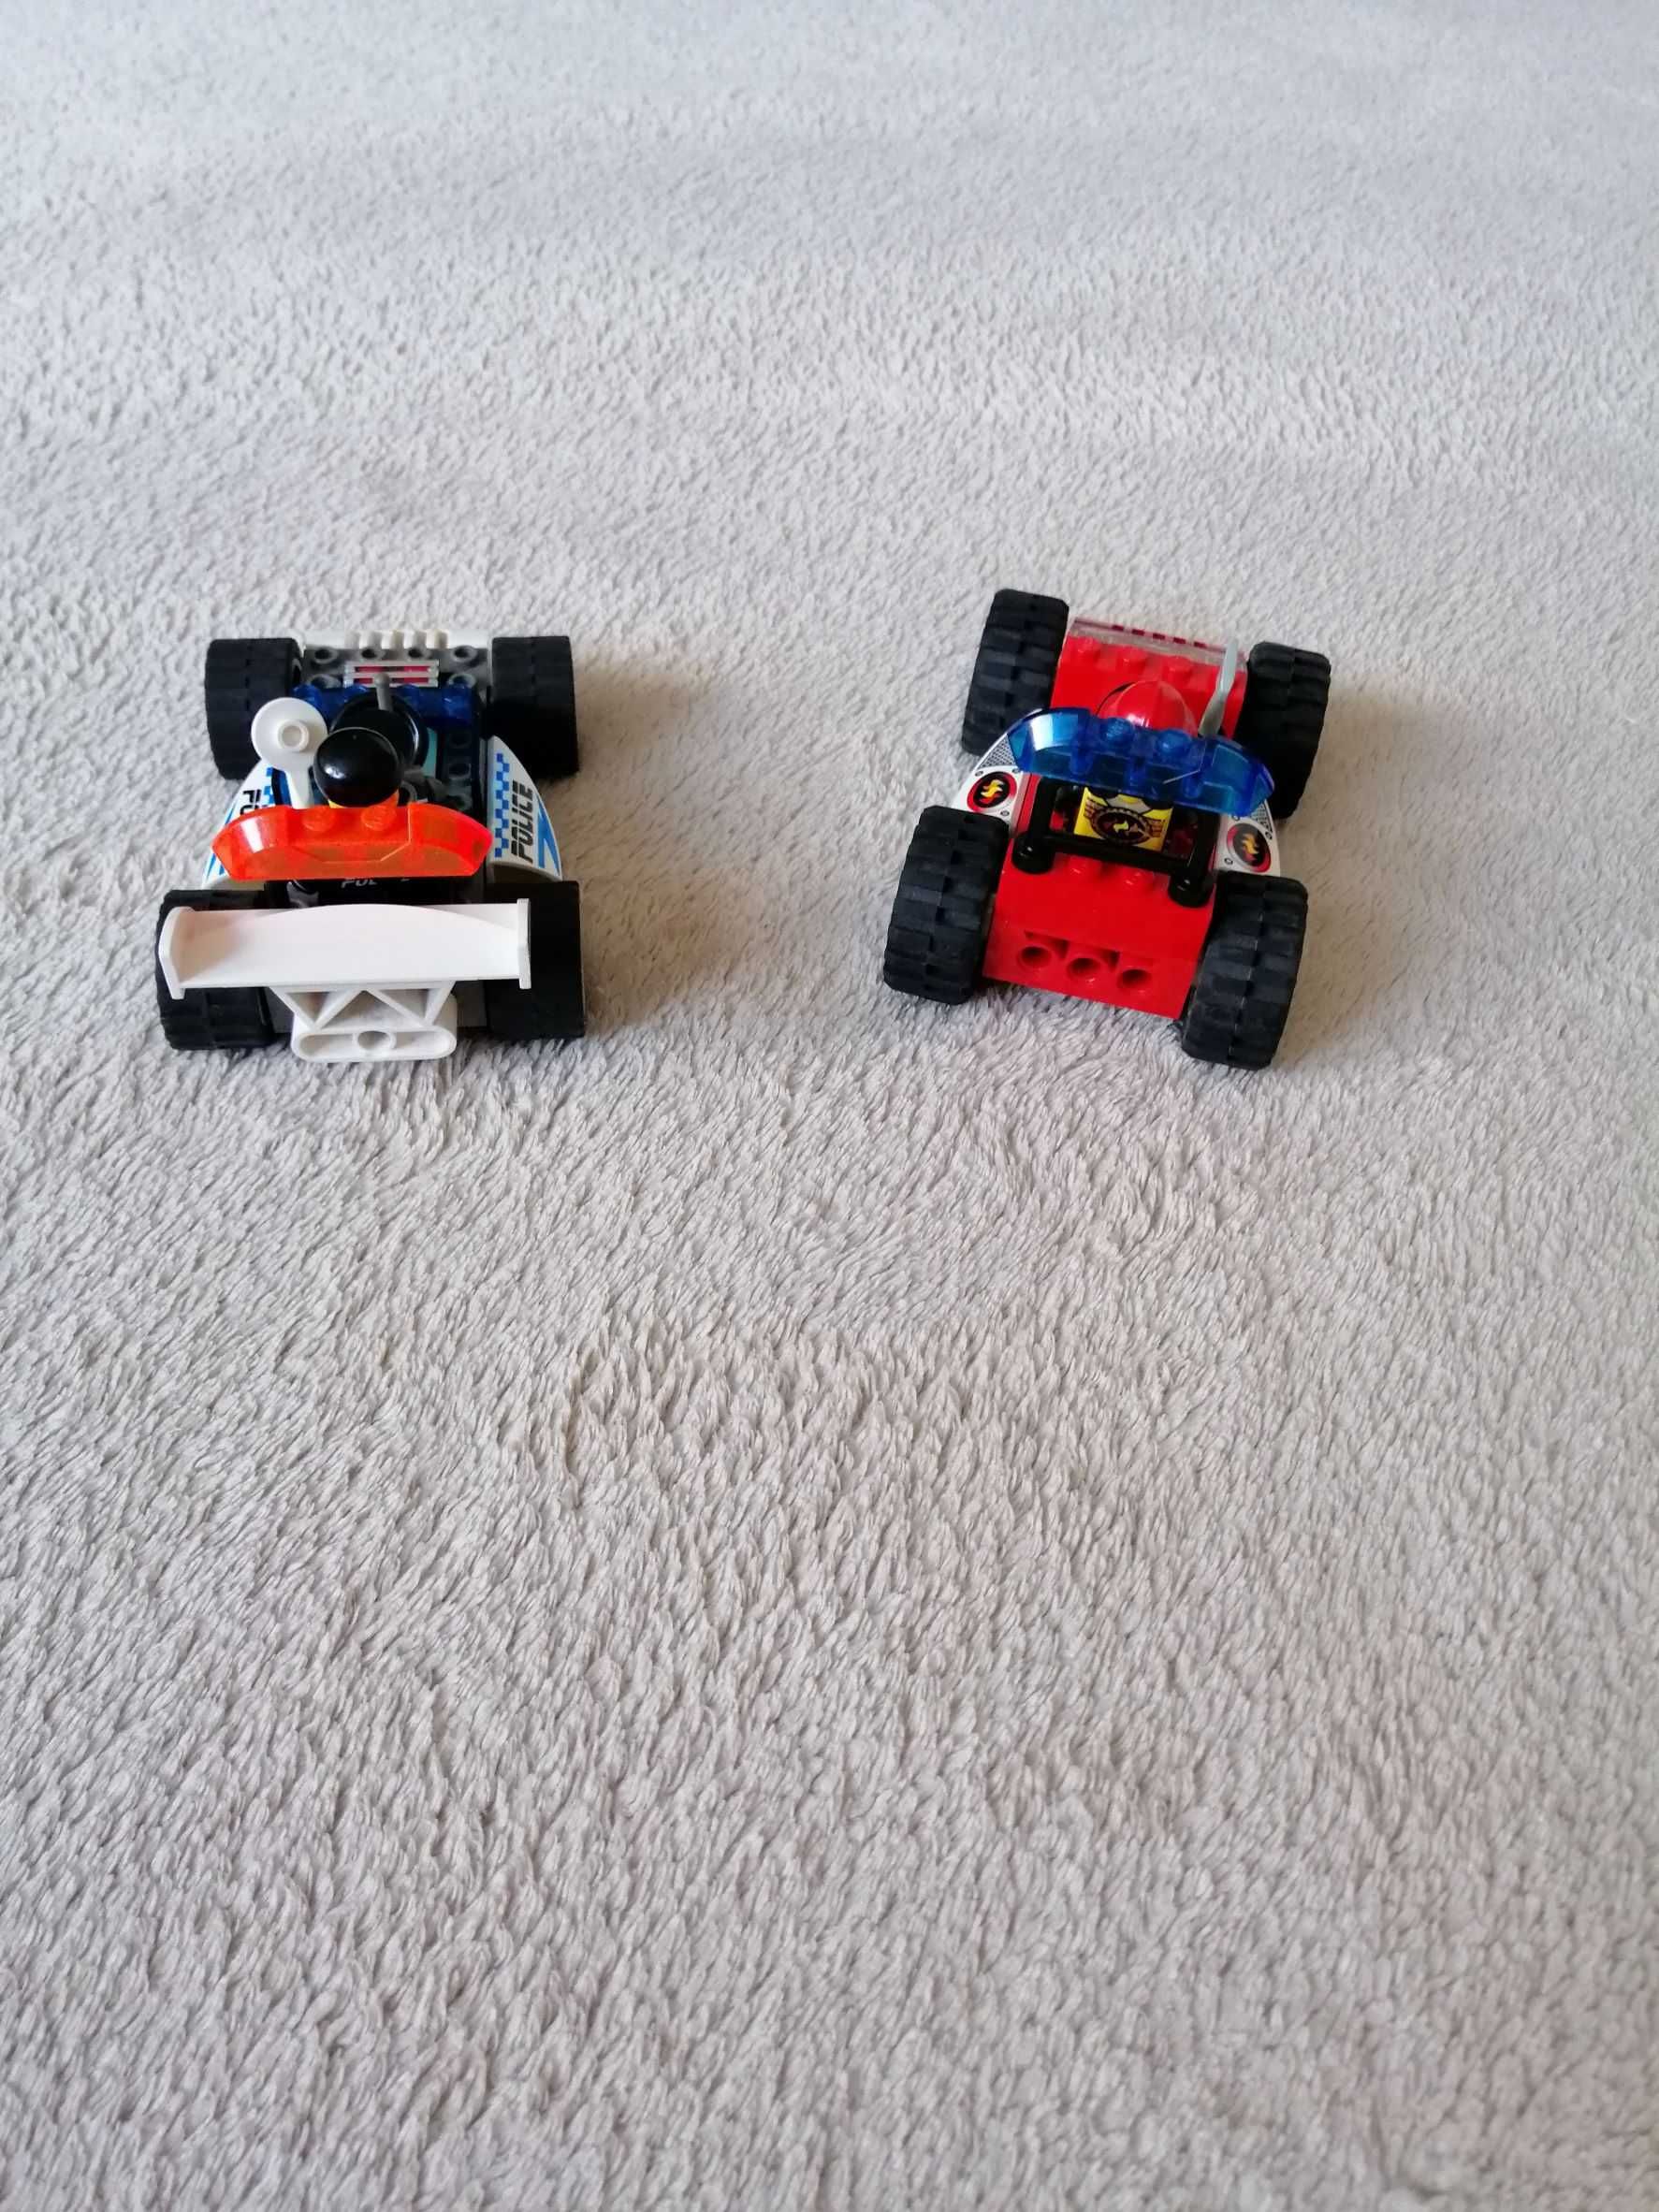 Lego Jack Stone zestaw dwóch pojazdów straż i policja